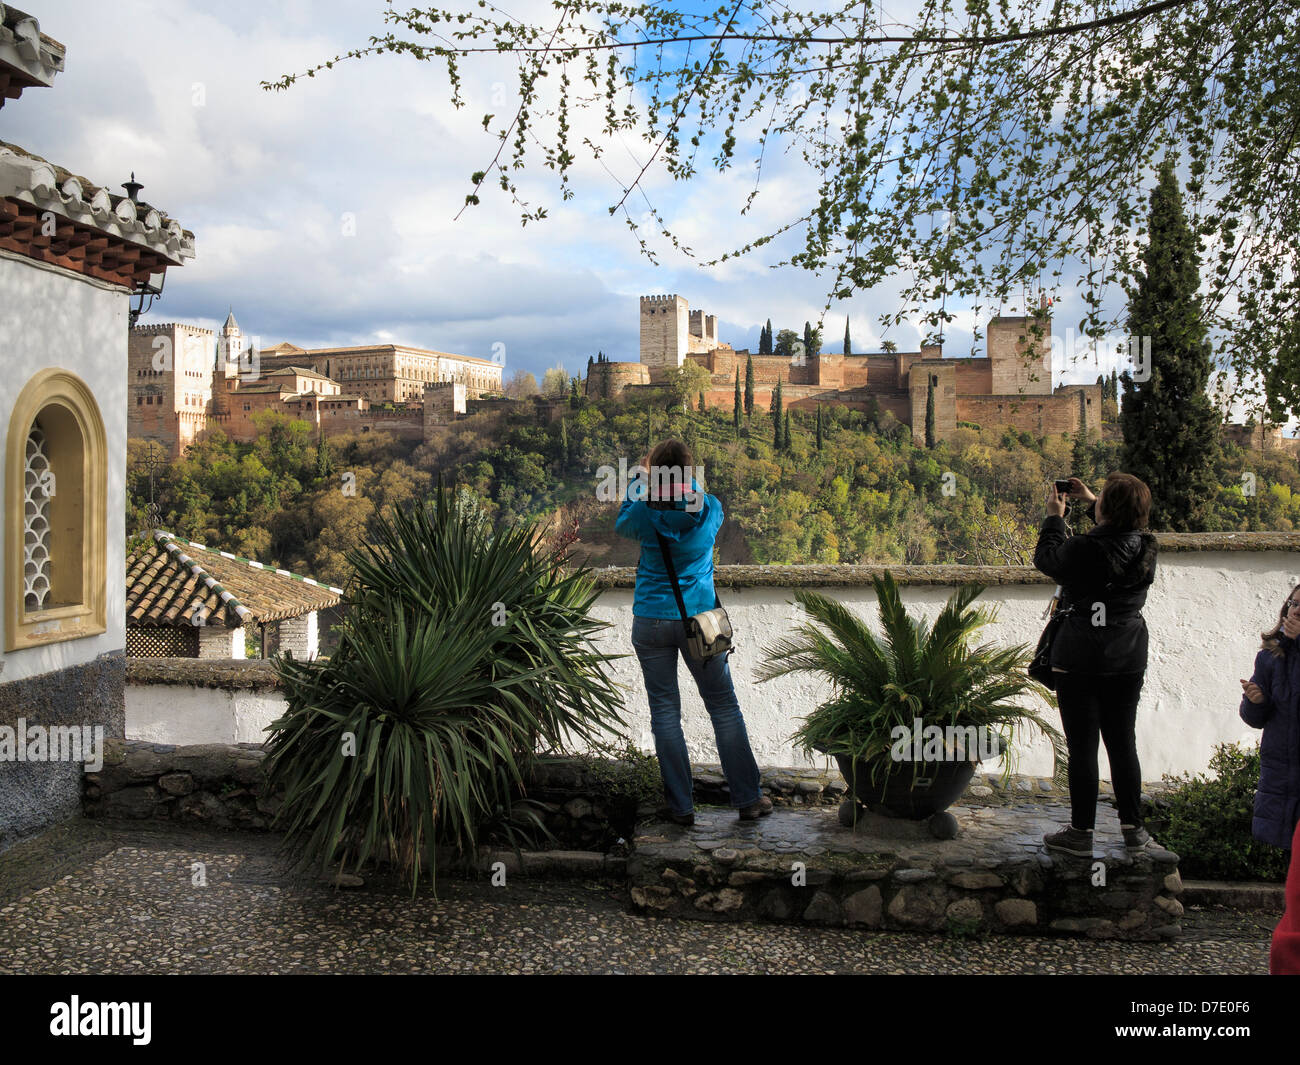 Vue sur l'Alcazaba et les Palais Nasrides de l'Alhambra sur les toits de l'Albaicin, Grenade, Espagne Banque D'Images